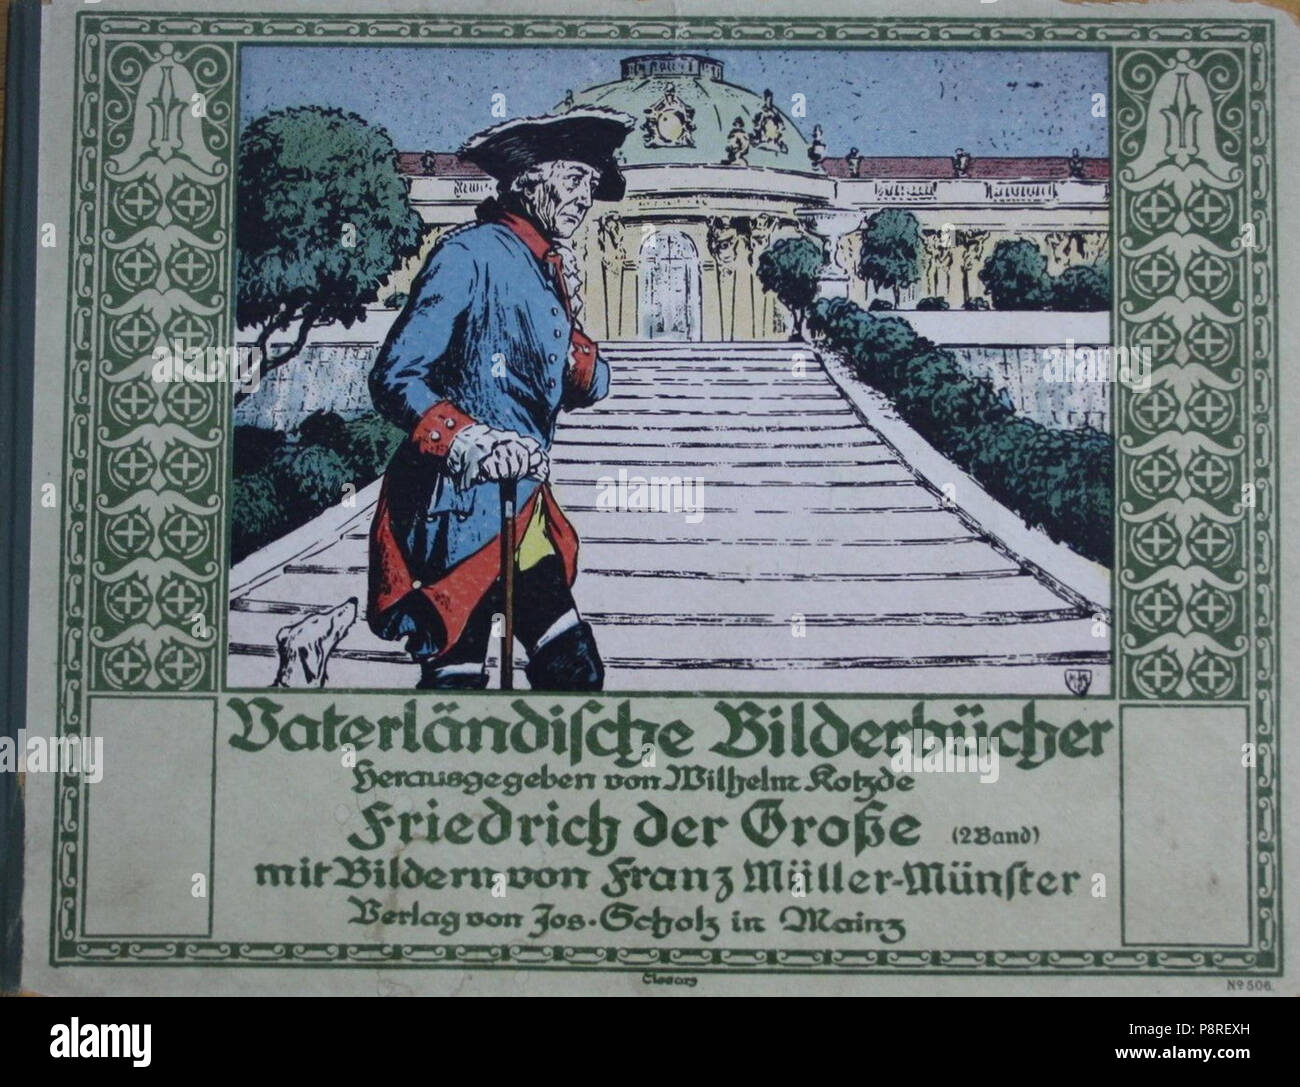 569 Vaterländische Bilderbücher - Friedrich Der Große - illustriert von Franz Müller-Münster Foto Stock